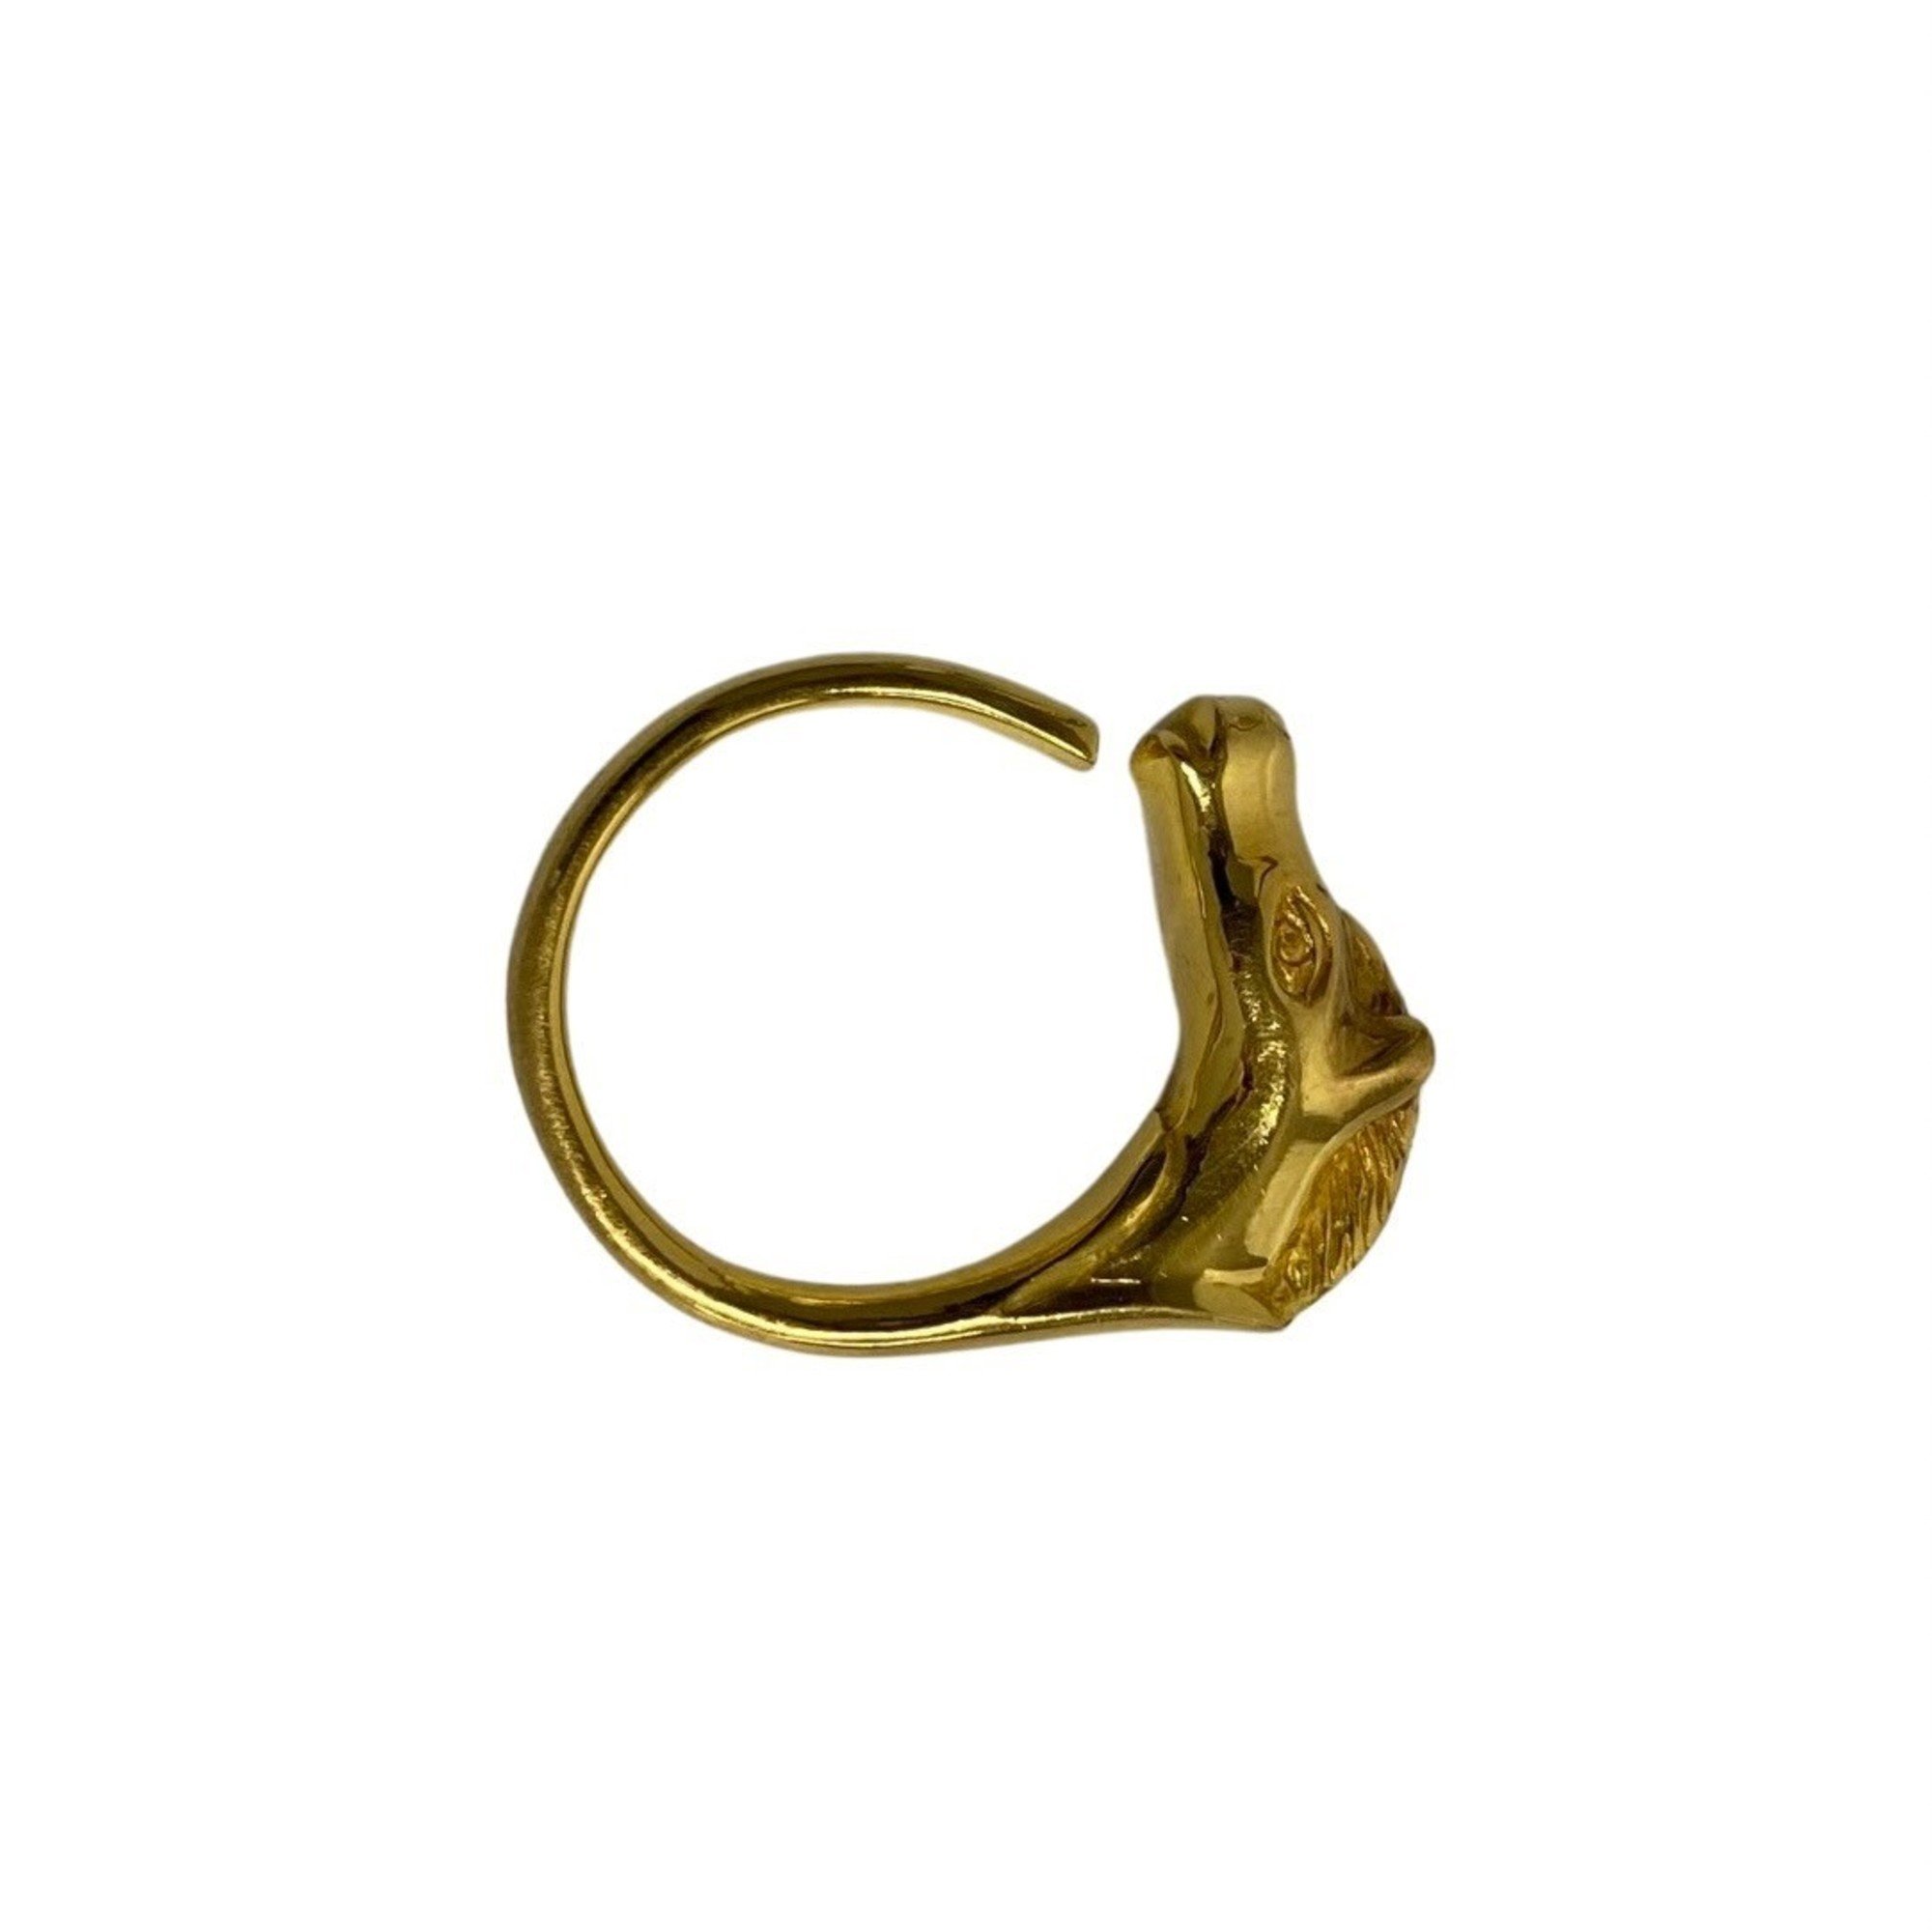 HERMES Cheval Horse Ring, Silver 925, Women's, Men's, Gold, 52070